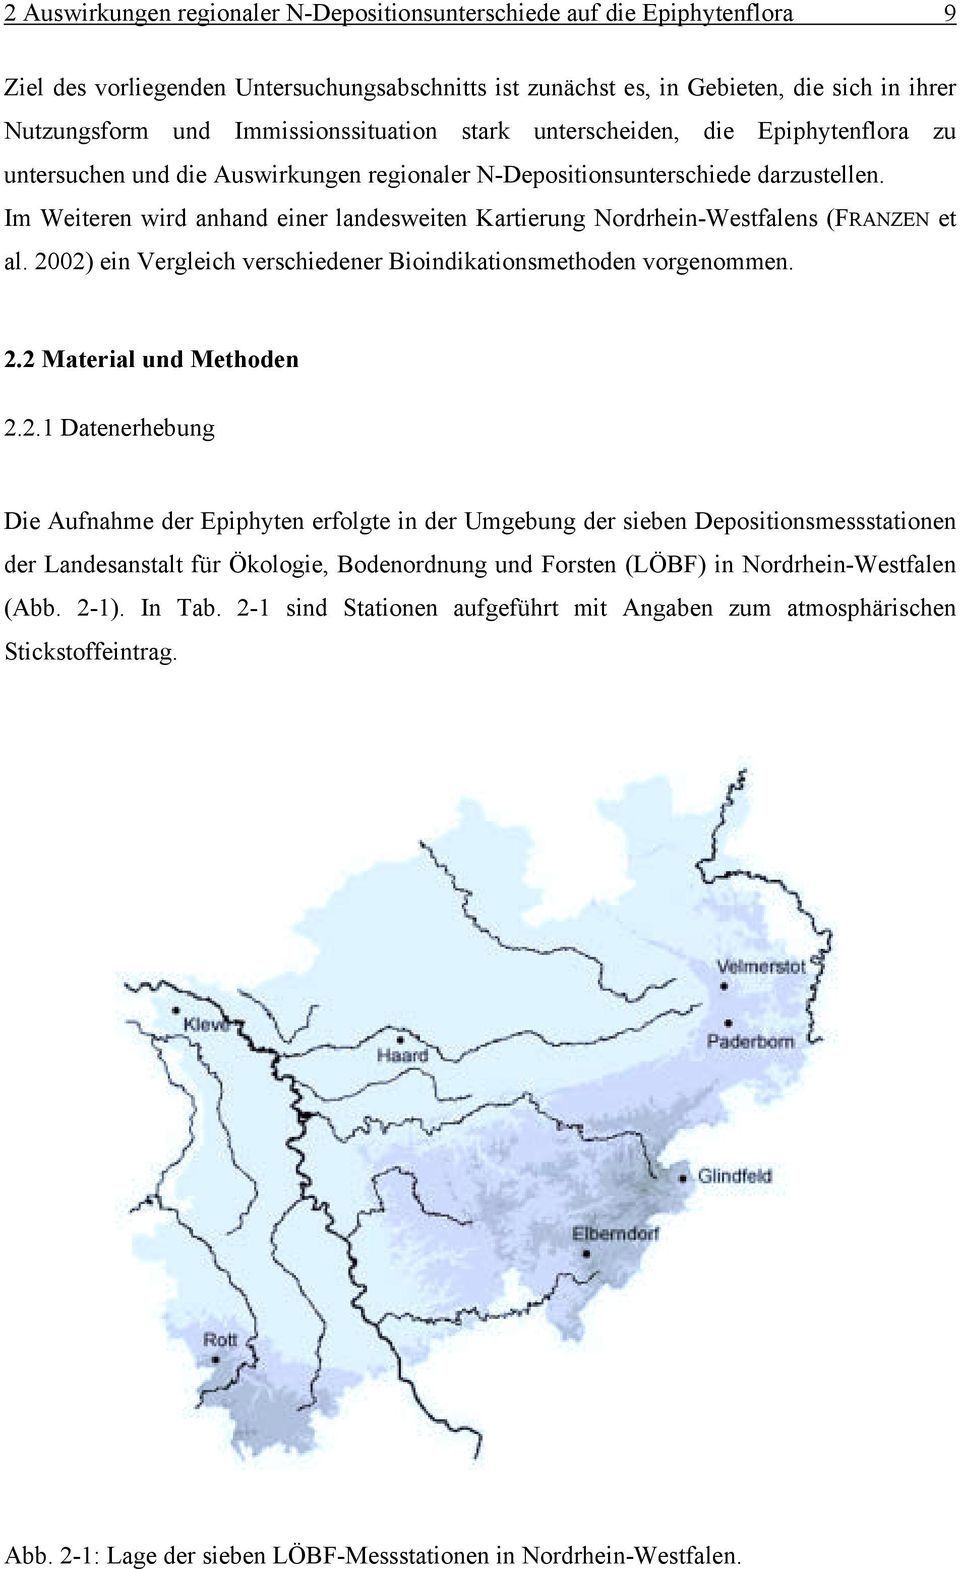 Im Weiteren wird anhand einer landesweiten Kartierung Nordrhein-Westfalens (FRANZEN et al. 20